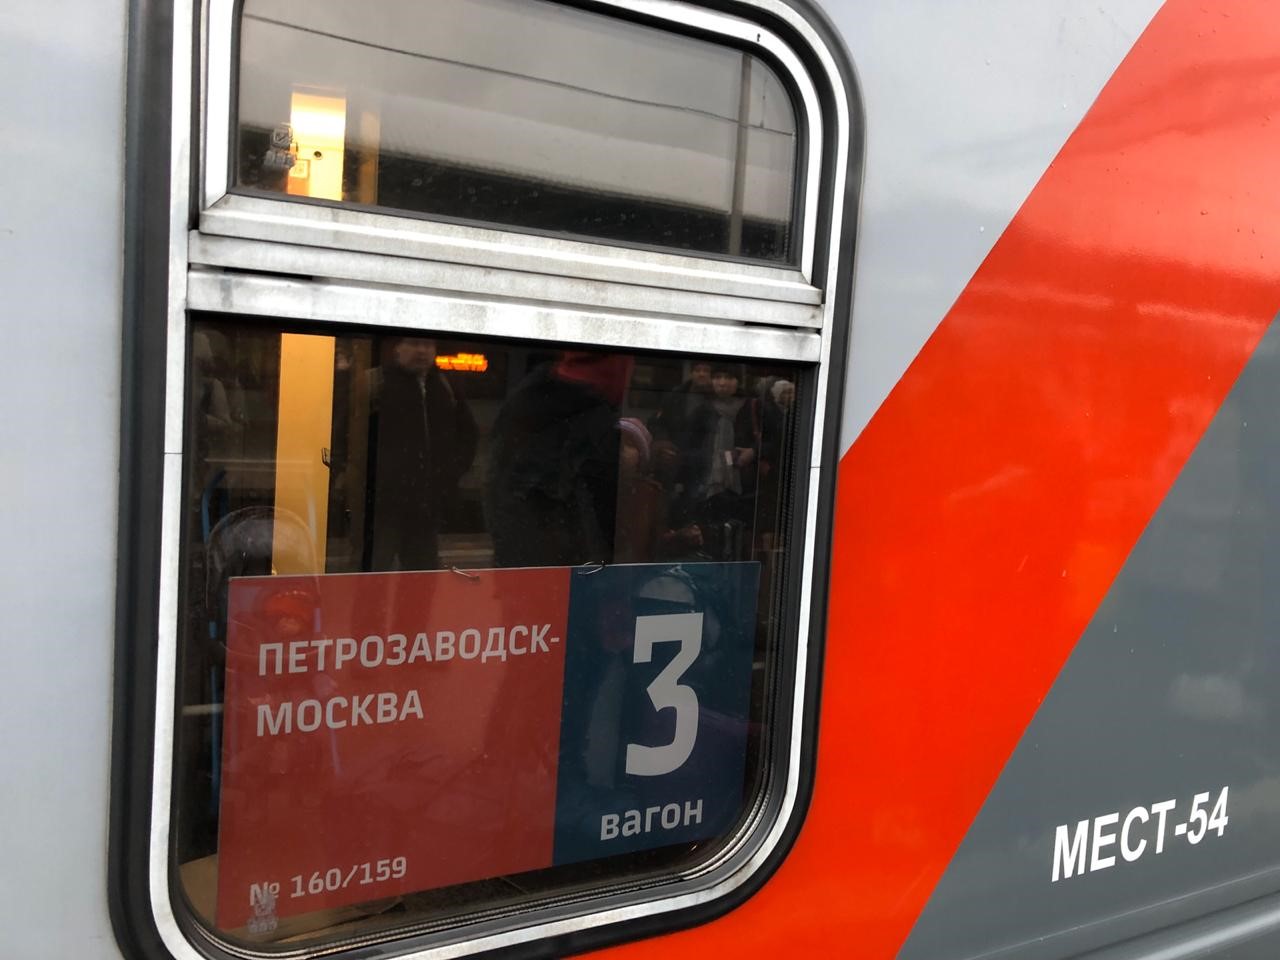 Первый поезд отправился из Москвы в Петрозаводск через Петербург и Сортавалу